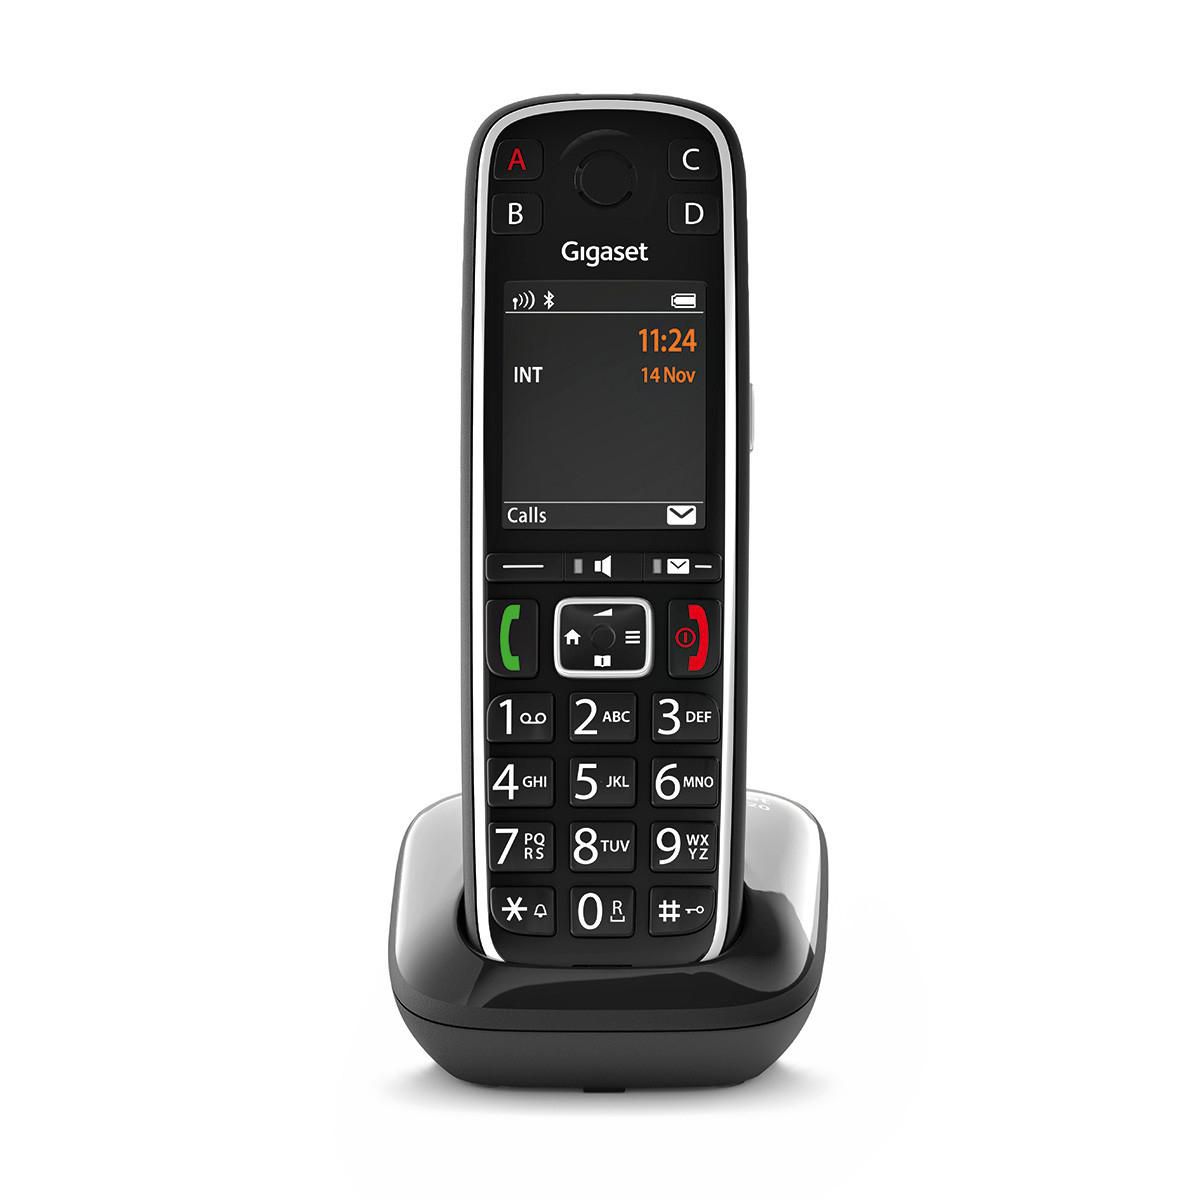 Gigaset S30852-H2903-C101 W128822927 E720 AnalogDect Telephone 